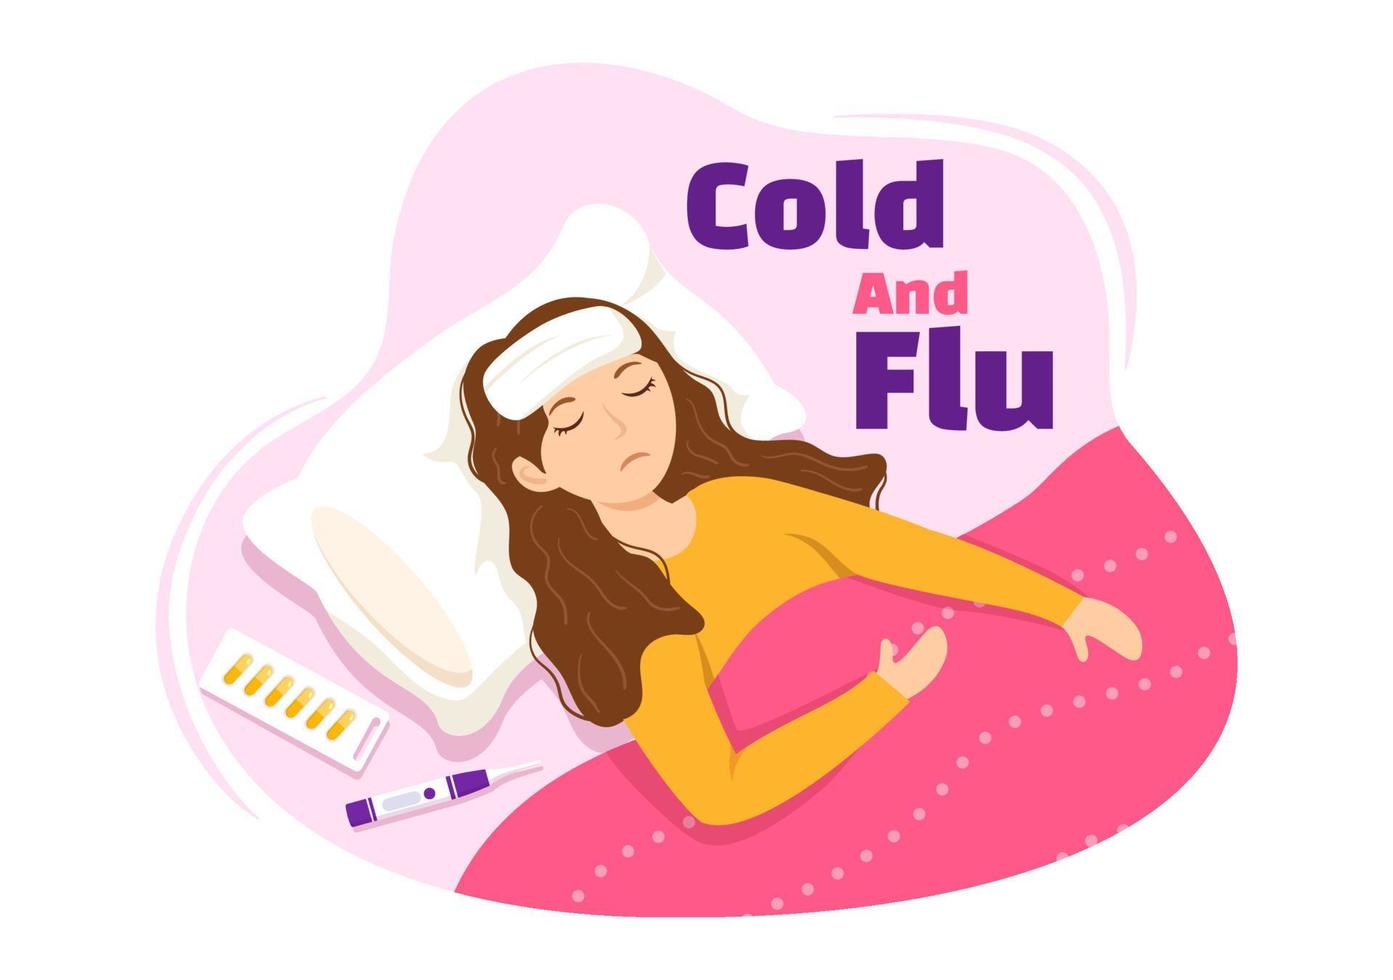 enfermo persona gripe y frío enfermedad ilustración con personas vistiendo grueso ropa en plano dibujos animados mano dibujado para salud cuidado aterrizaje página modelo vector